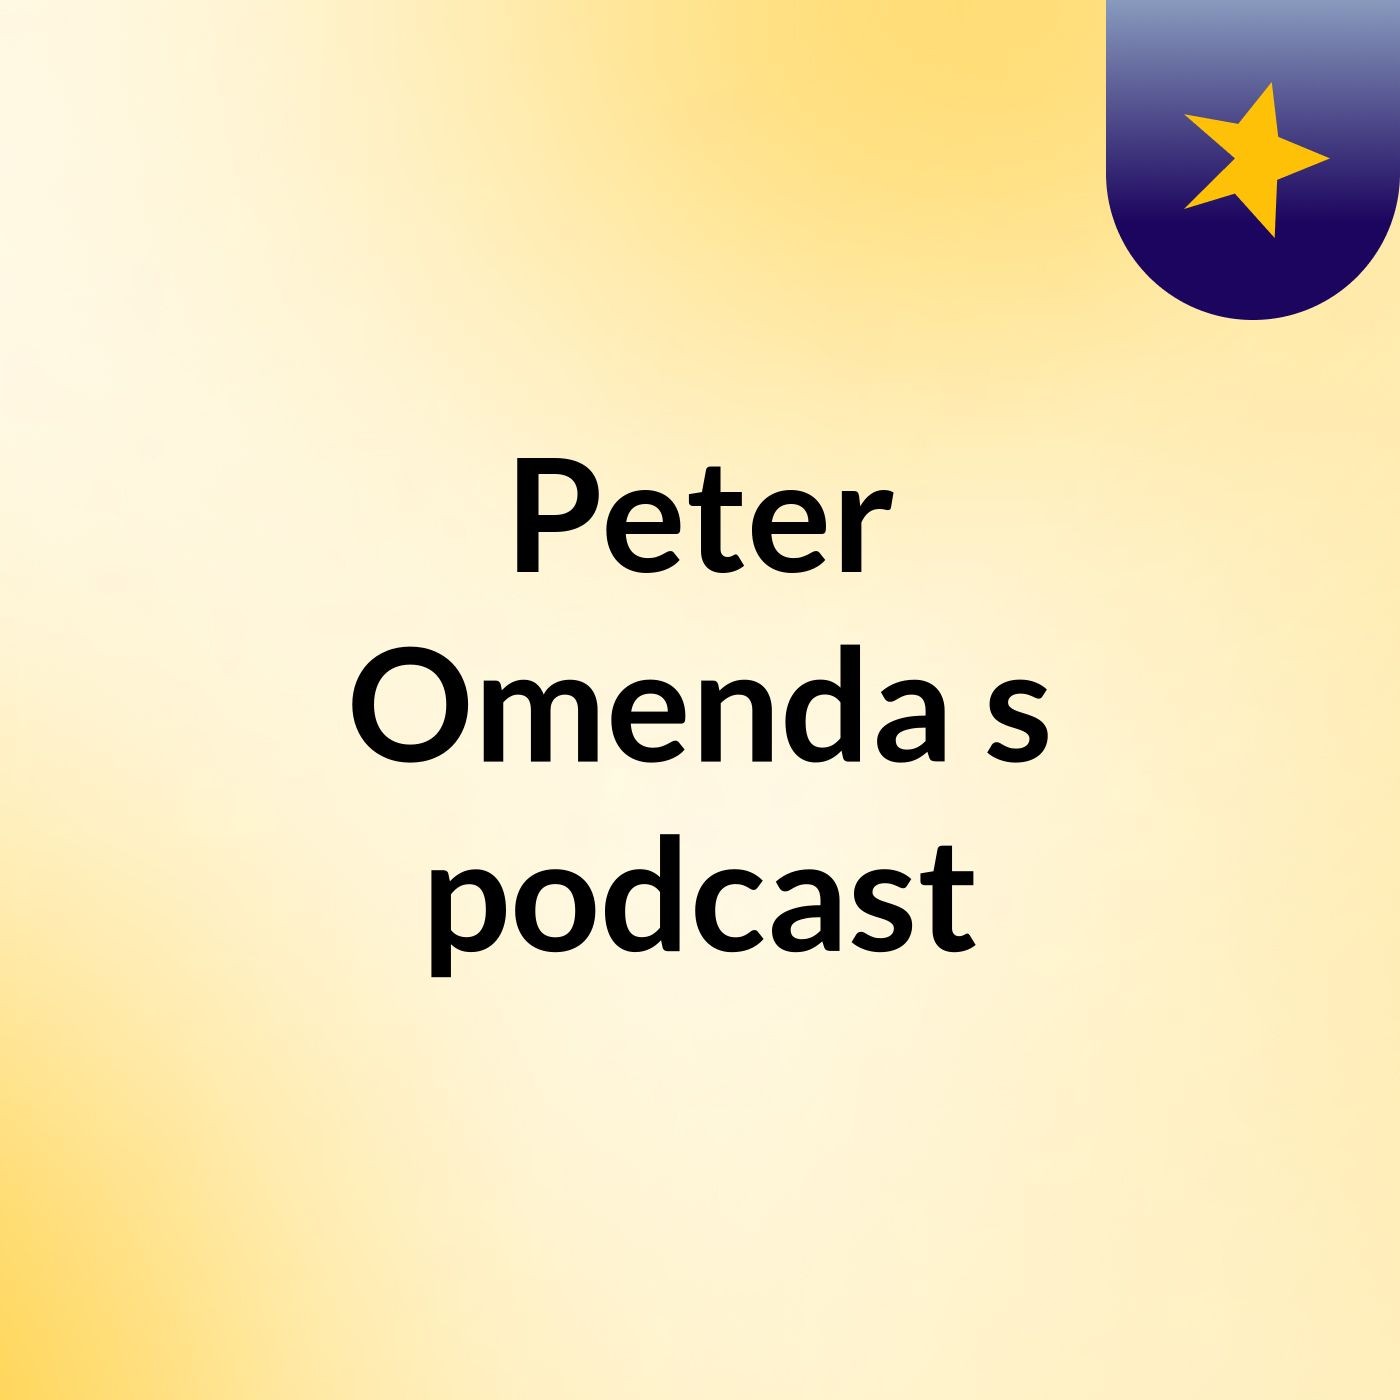 Peter Omenda's podcast